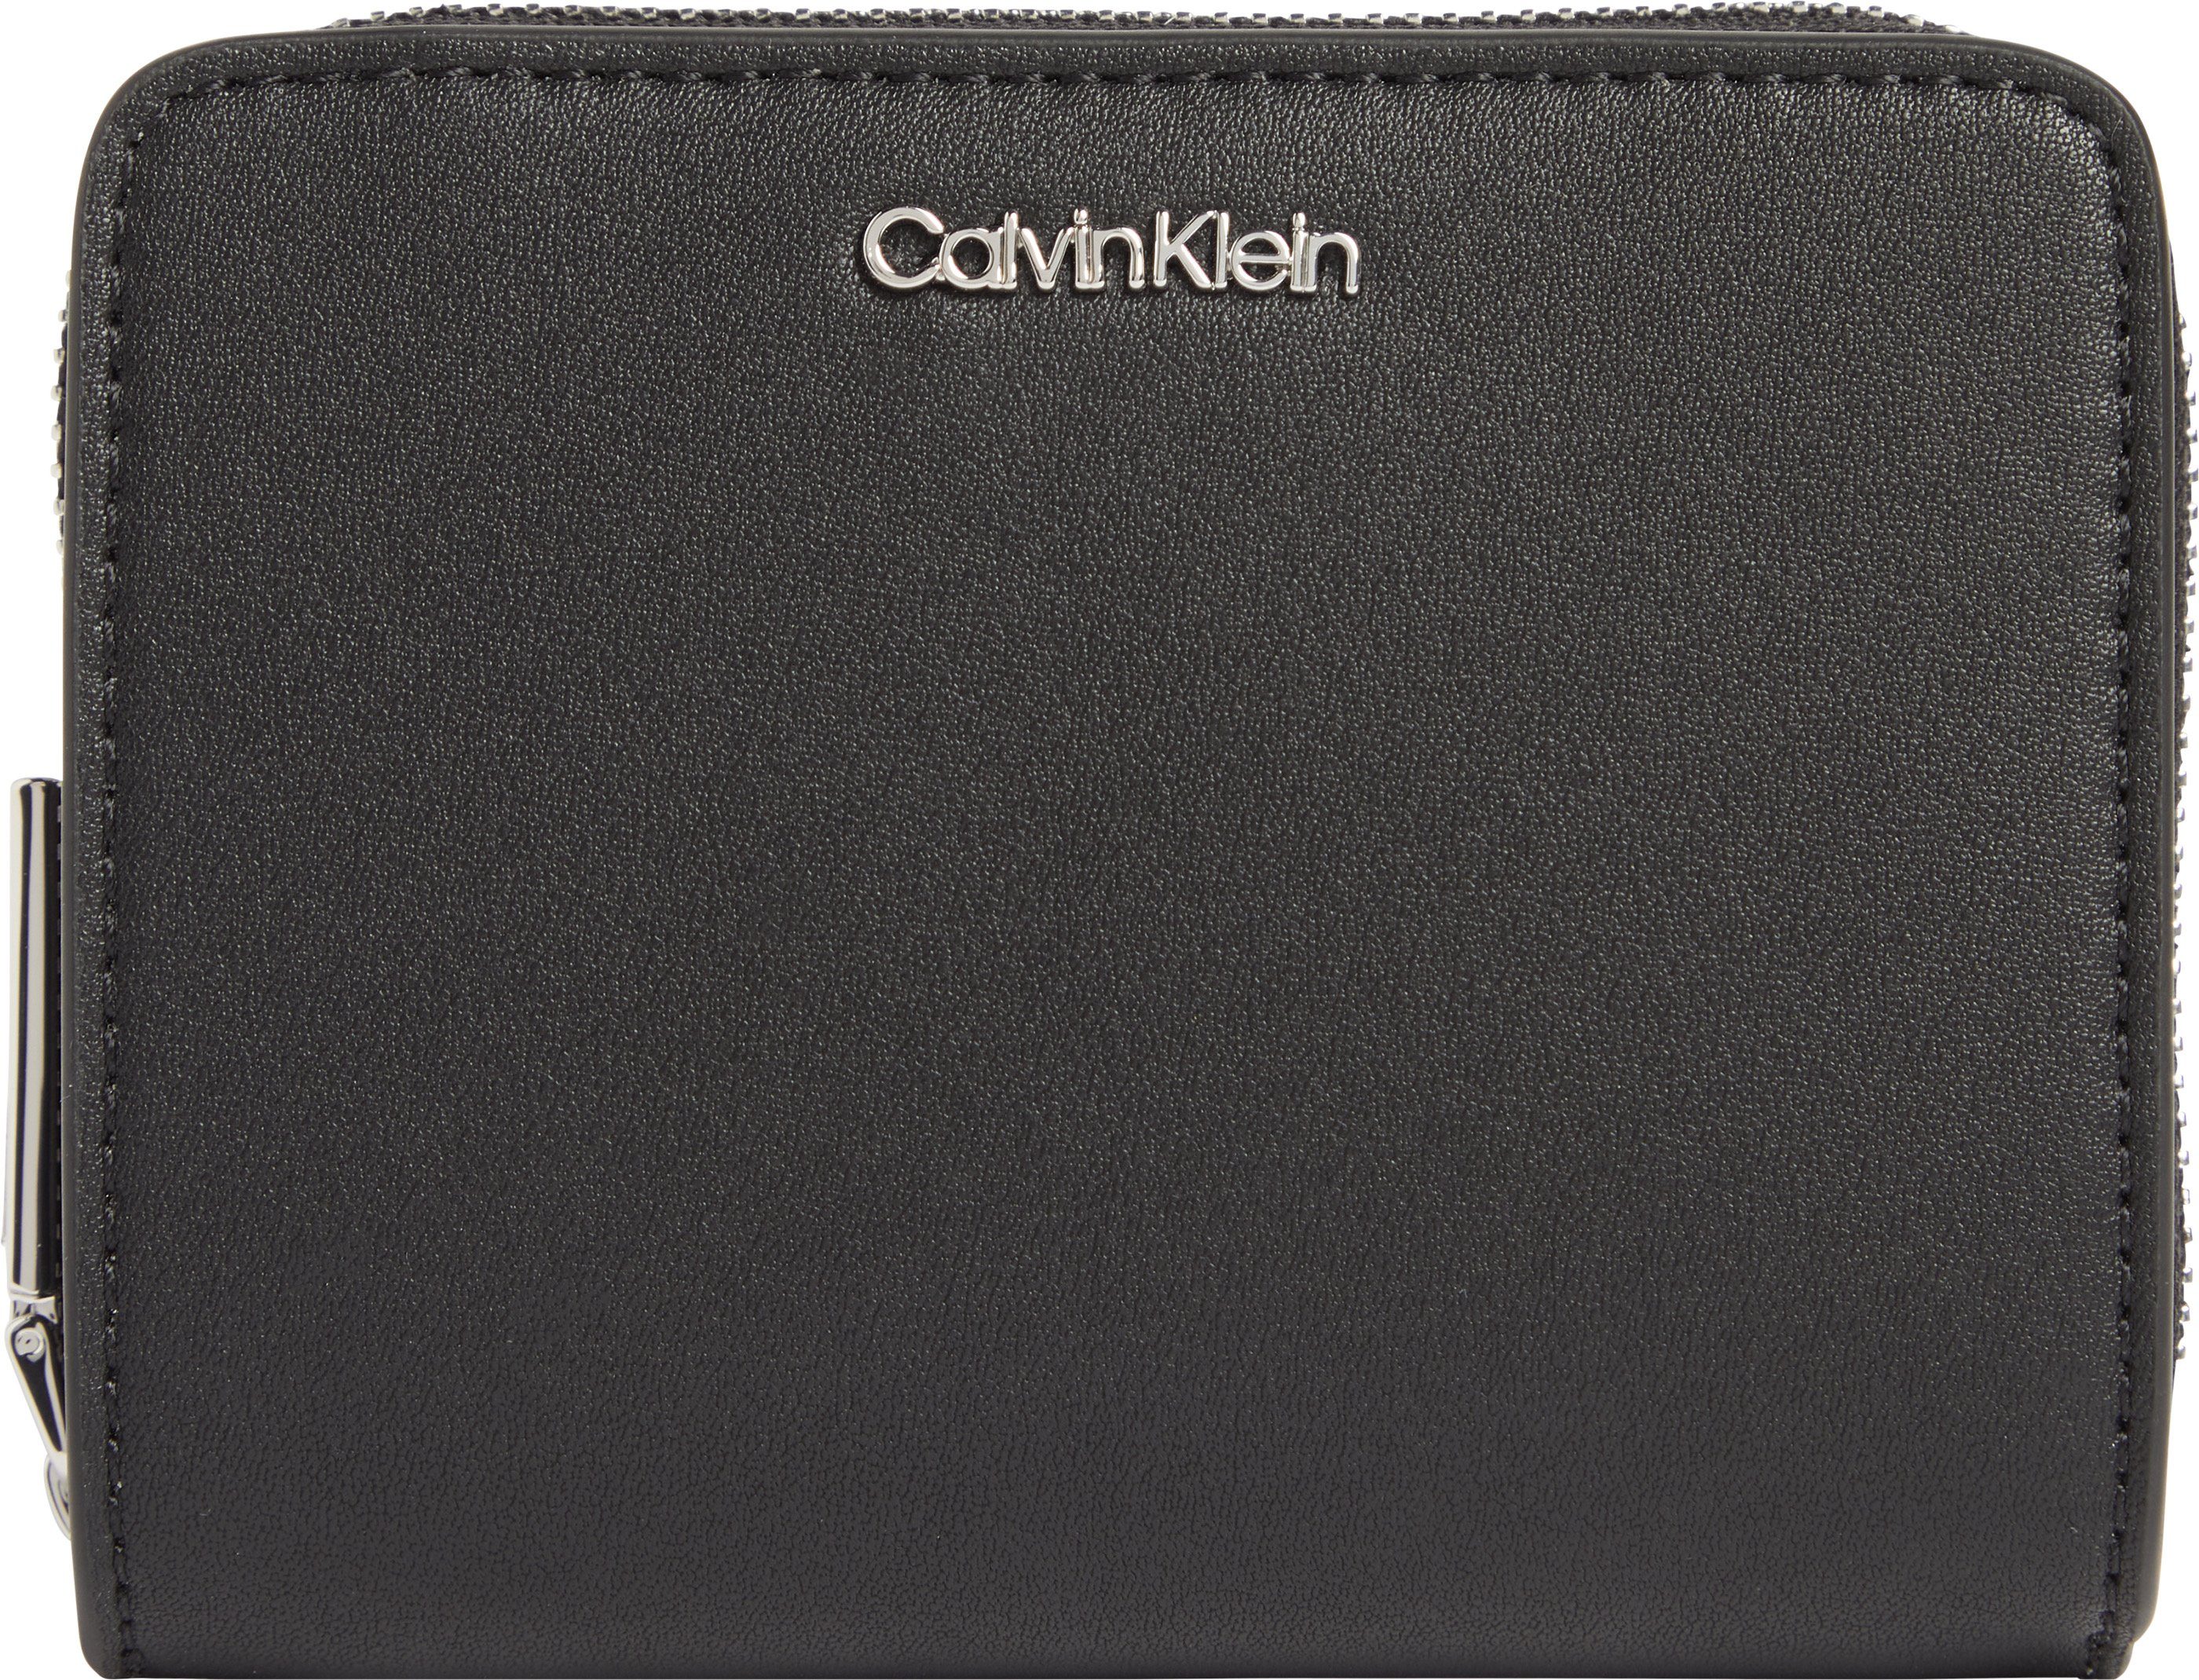 Calvin Klein Geldbörse, Logo aus silberfarbenem Metall